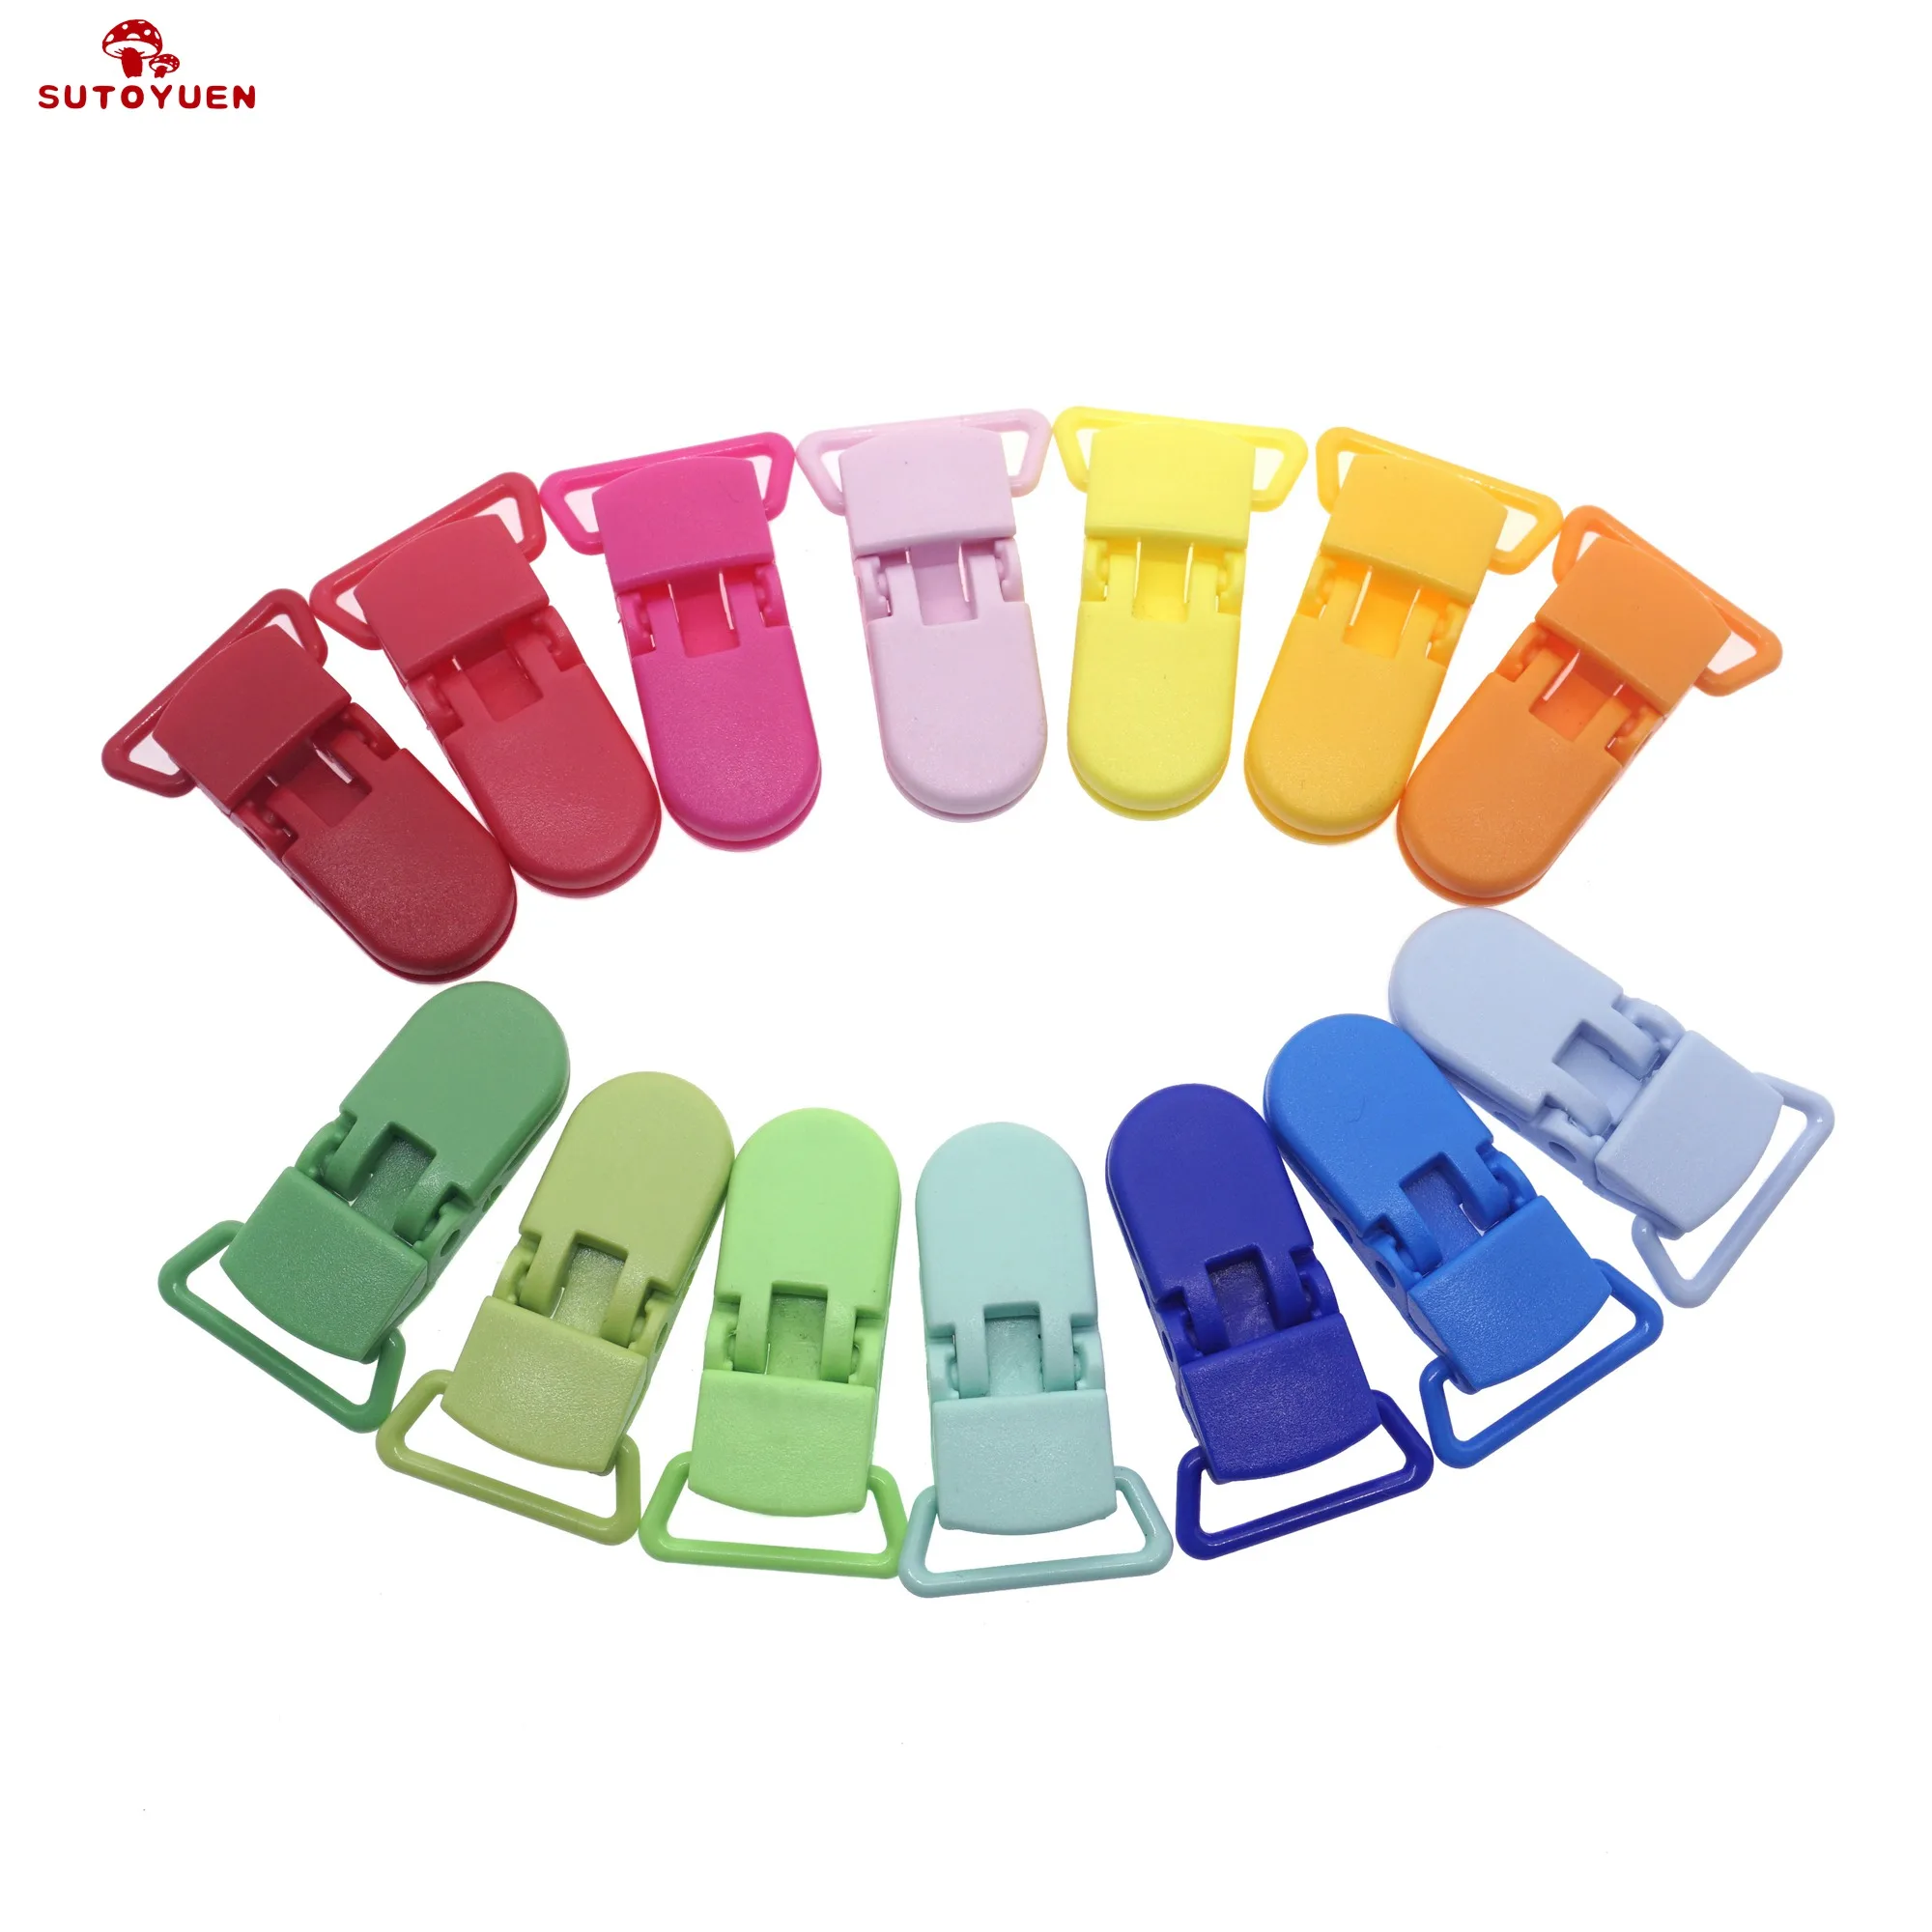 Sutoyuen 800pcs Mix 15 Colors 20mm D Shape Kam Plastic Dummy Pacifier Clip Suspender Clip Soother Clip alligator/Bib Clip Holder